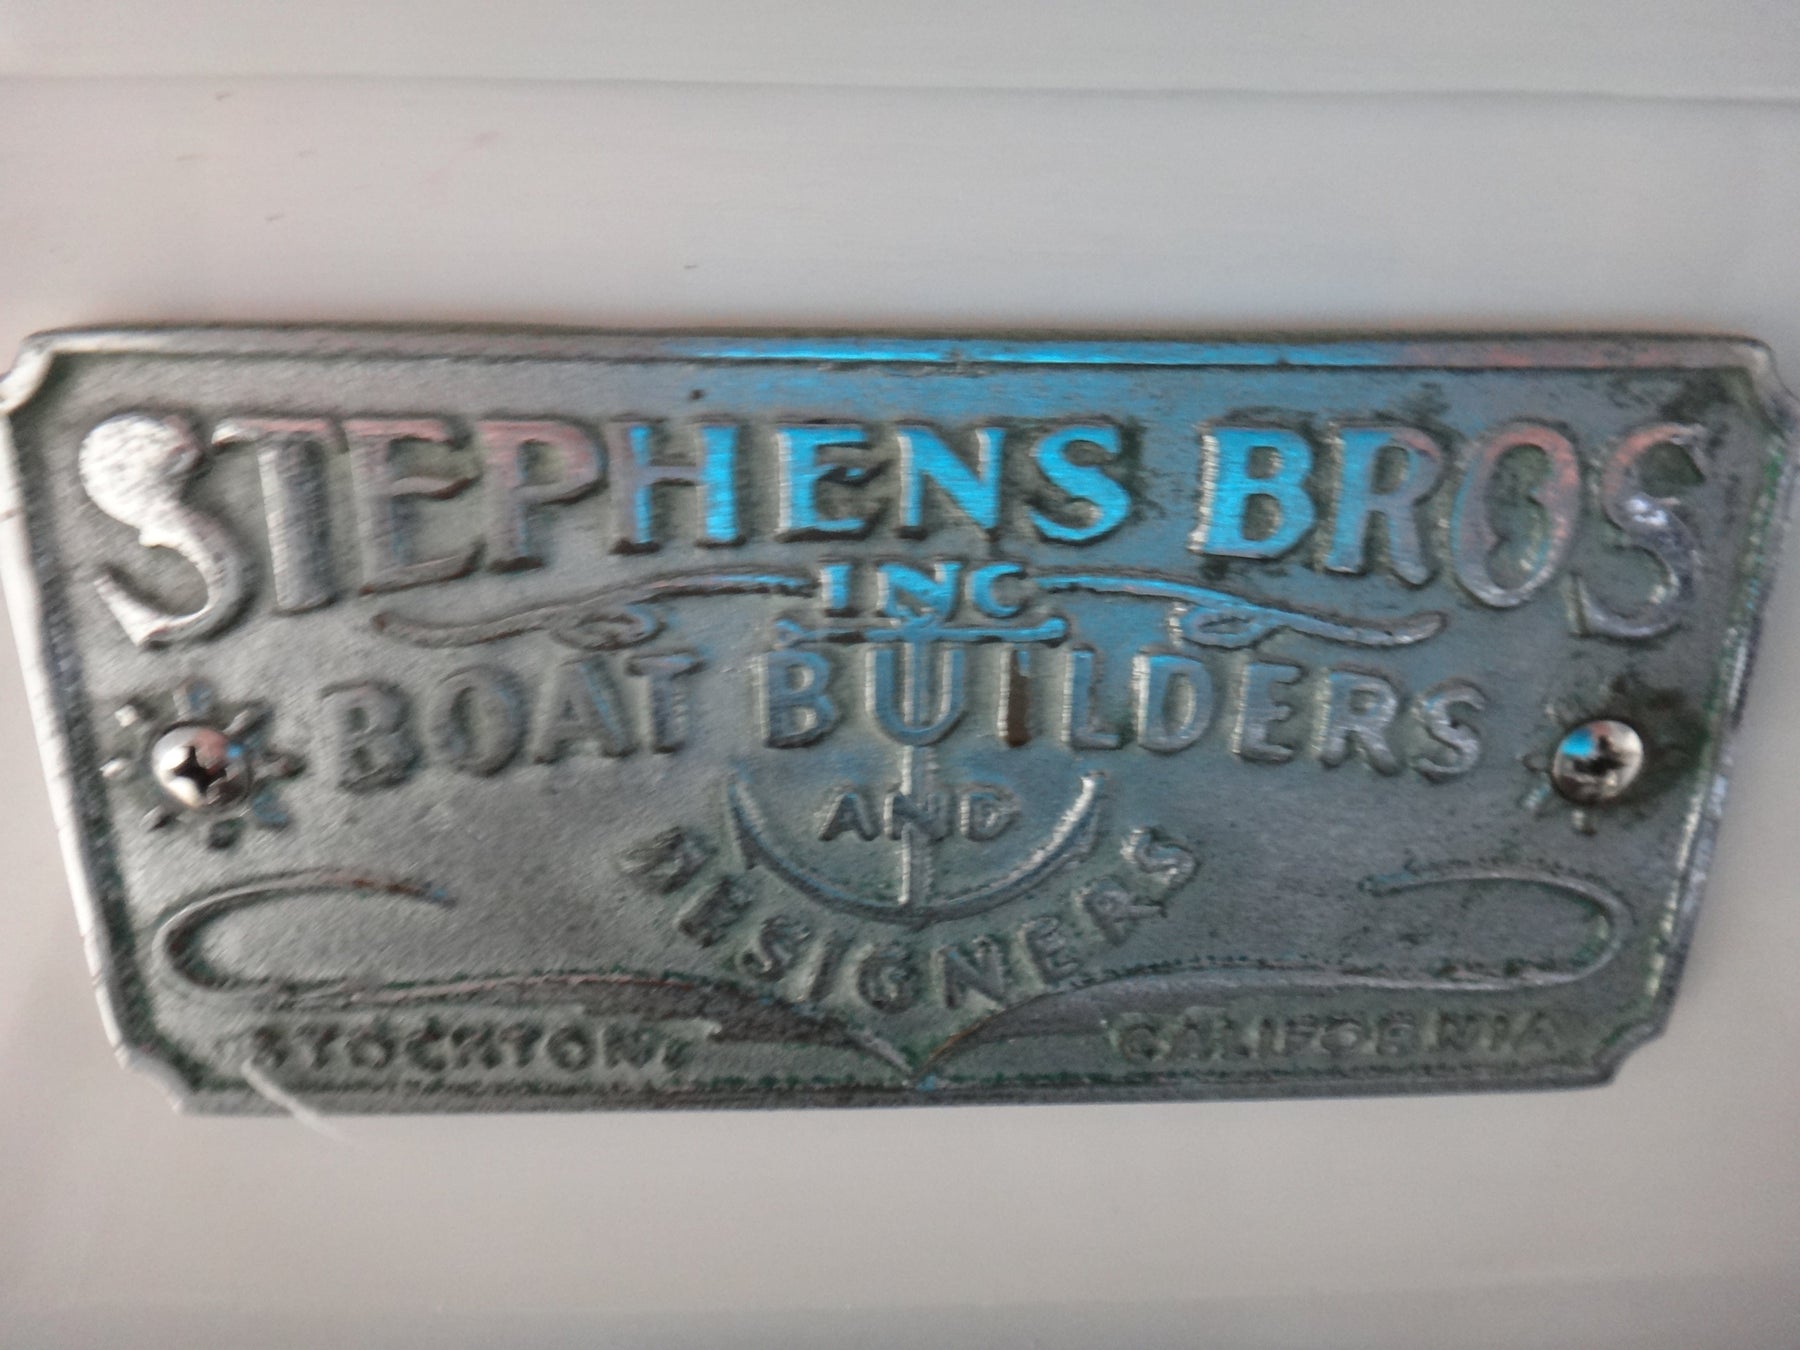 1958 Stephens Bros. 42' Cruiser